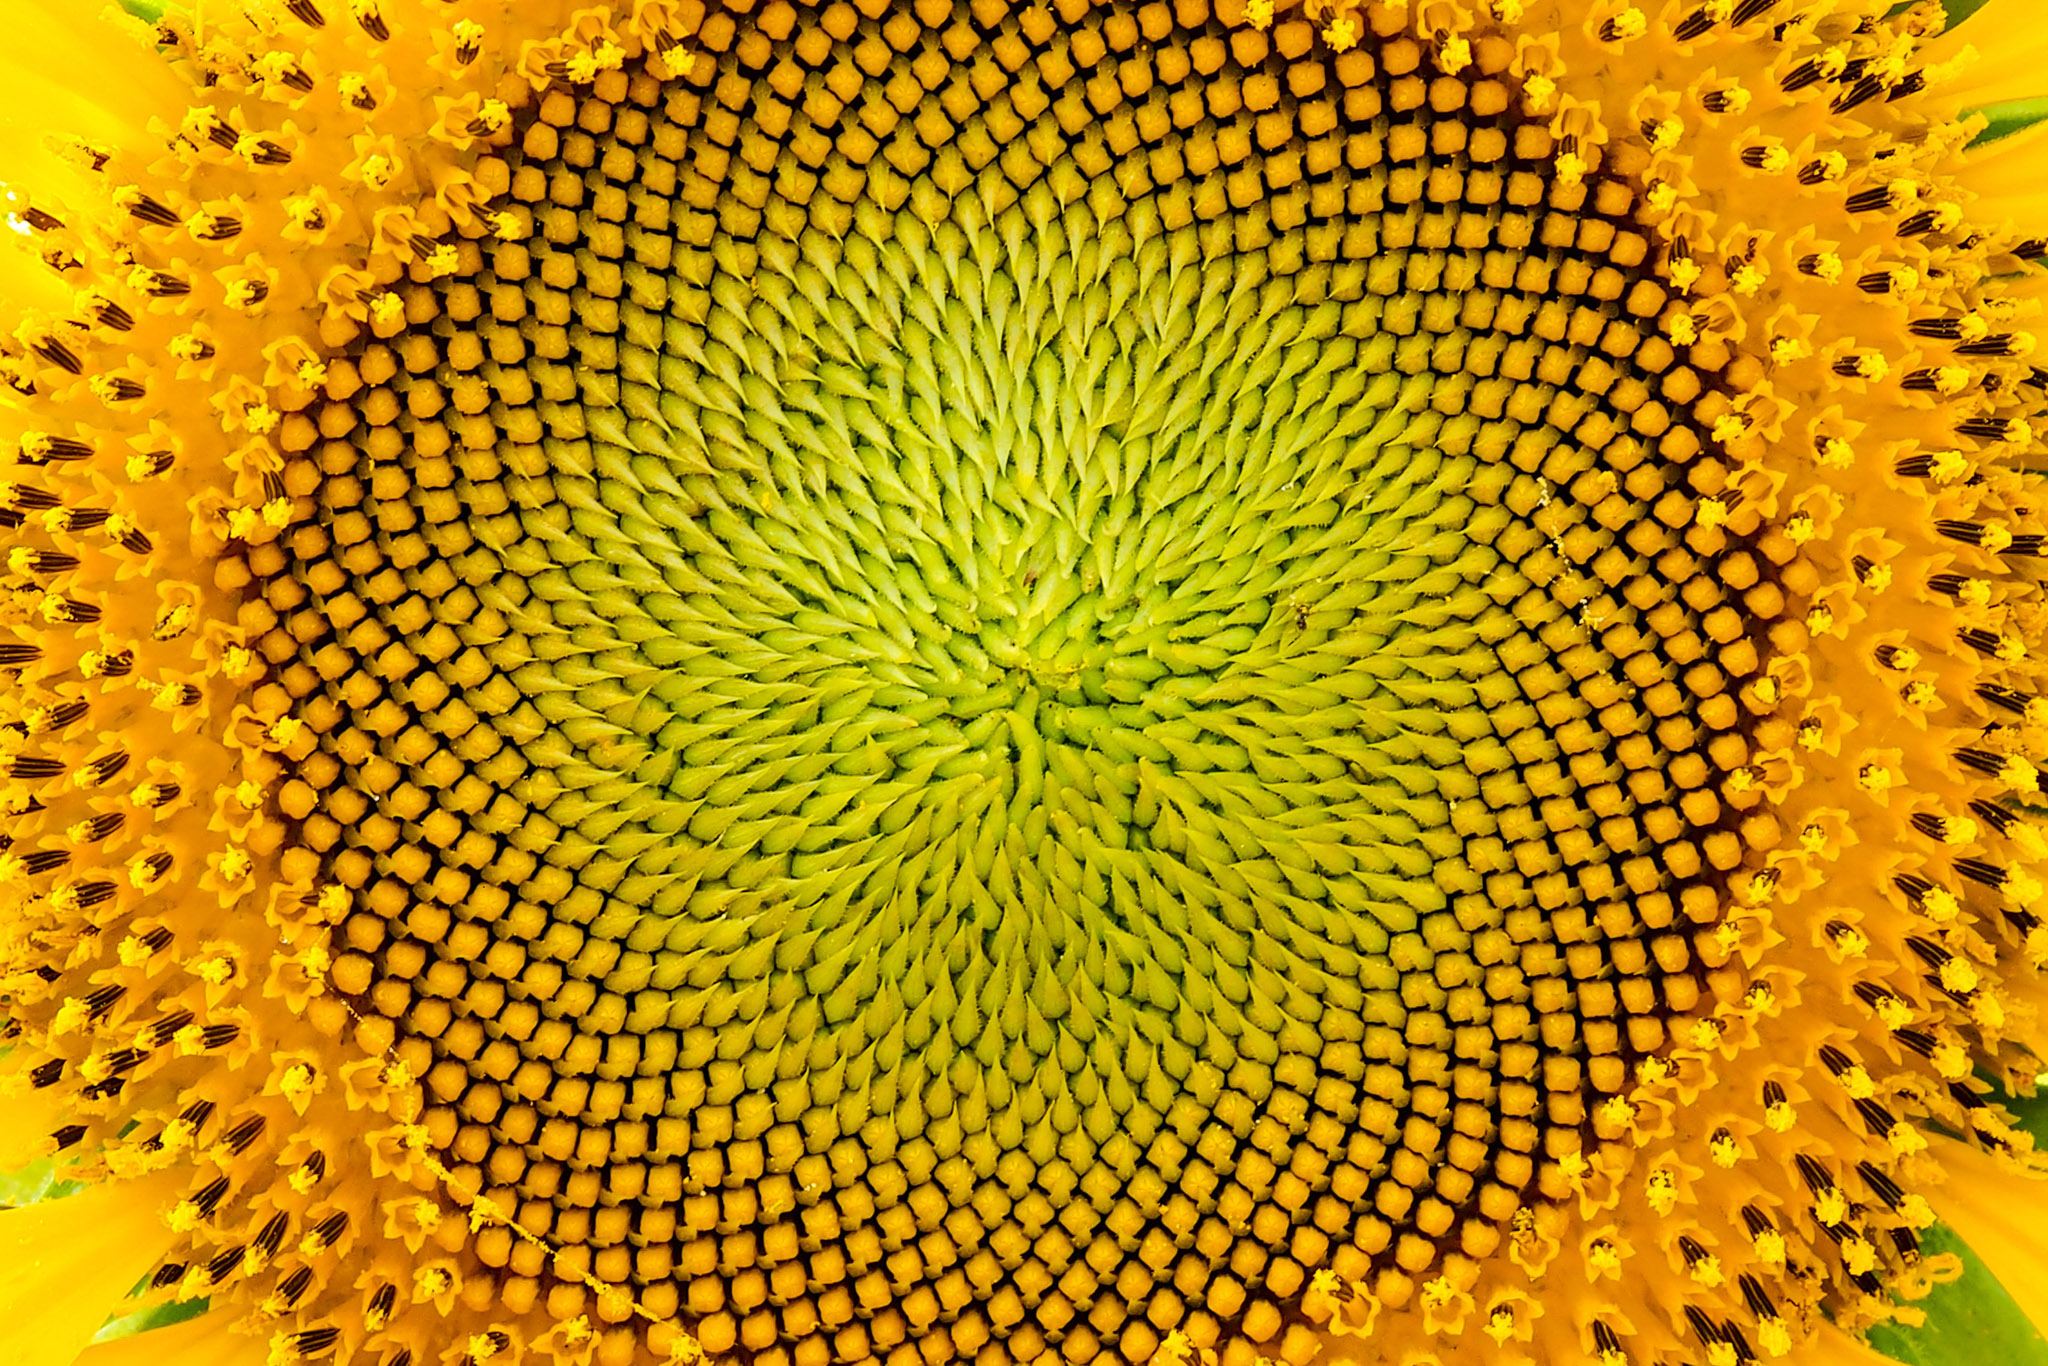 Closeup of a sunflower